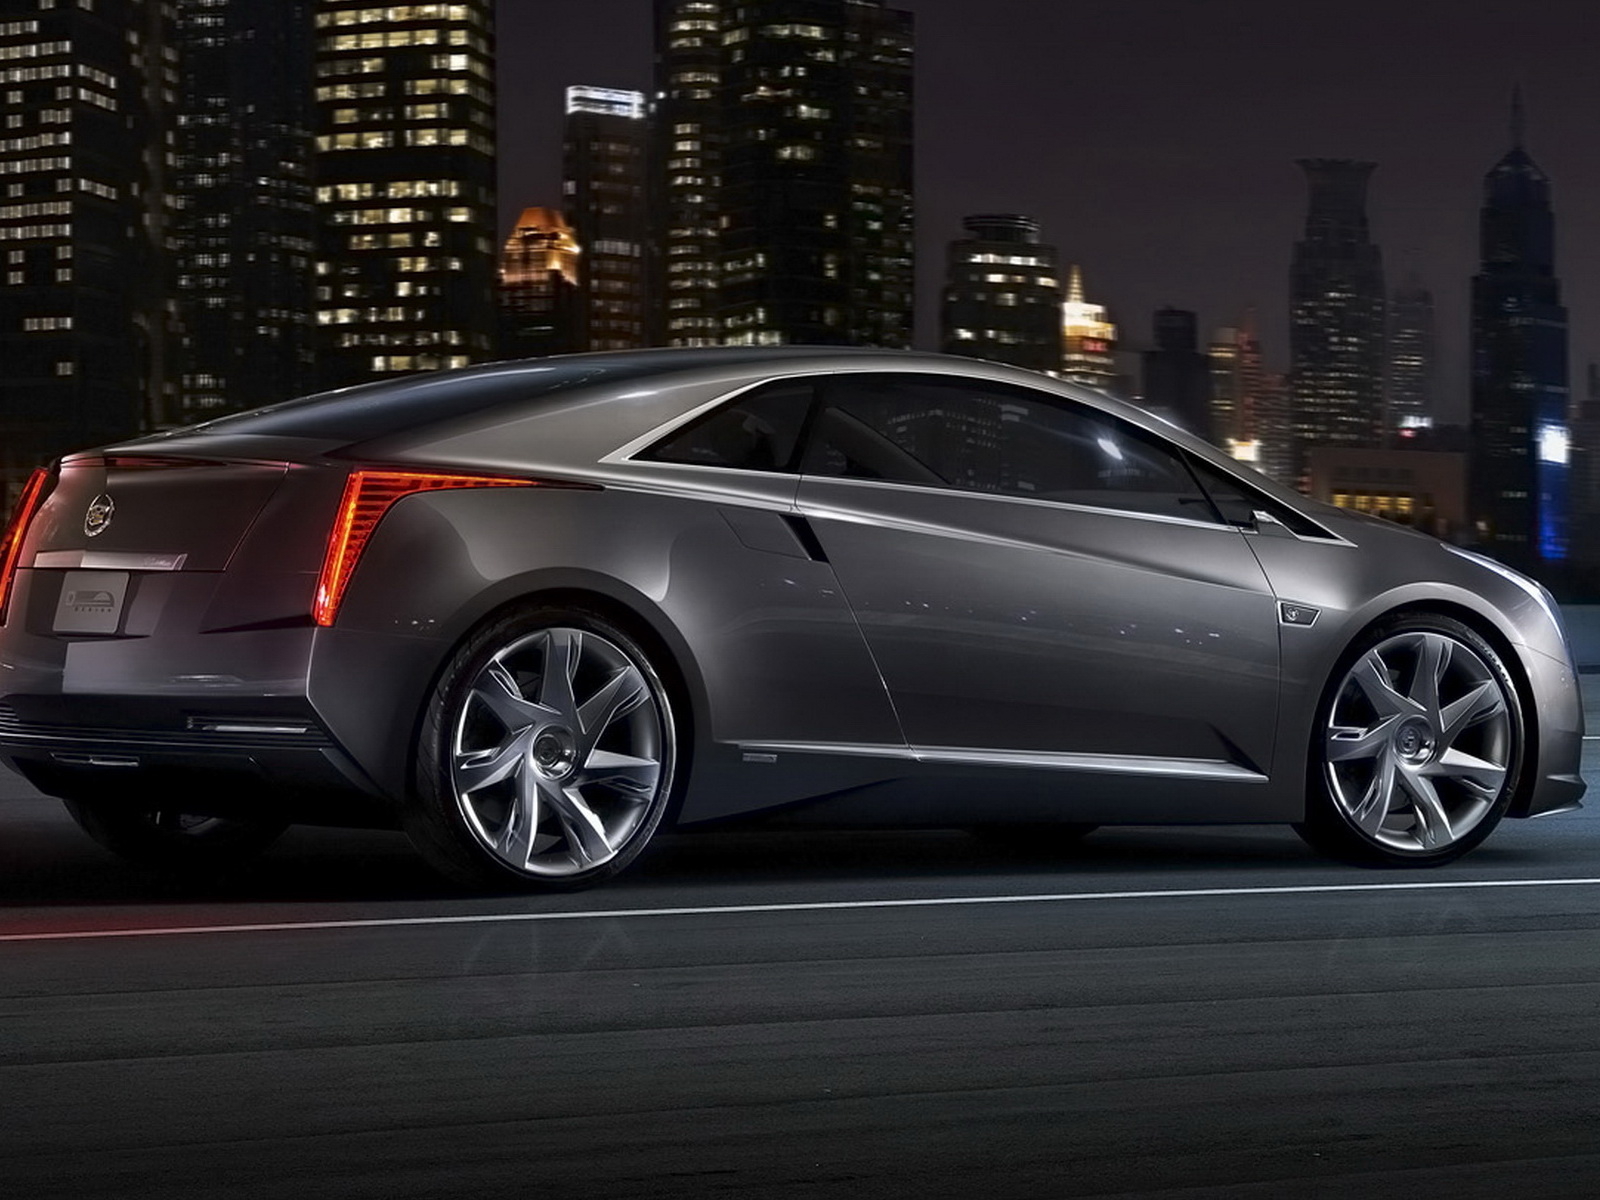 Cadillac-Converj-ELR-Concept 2011